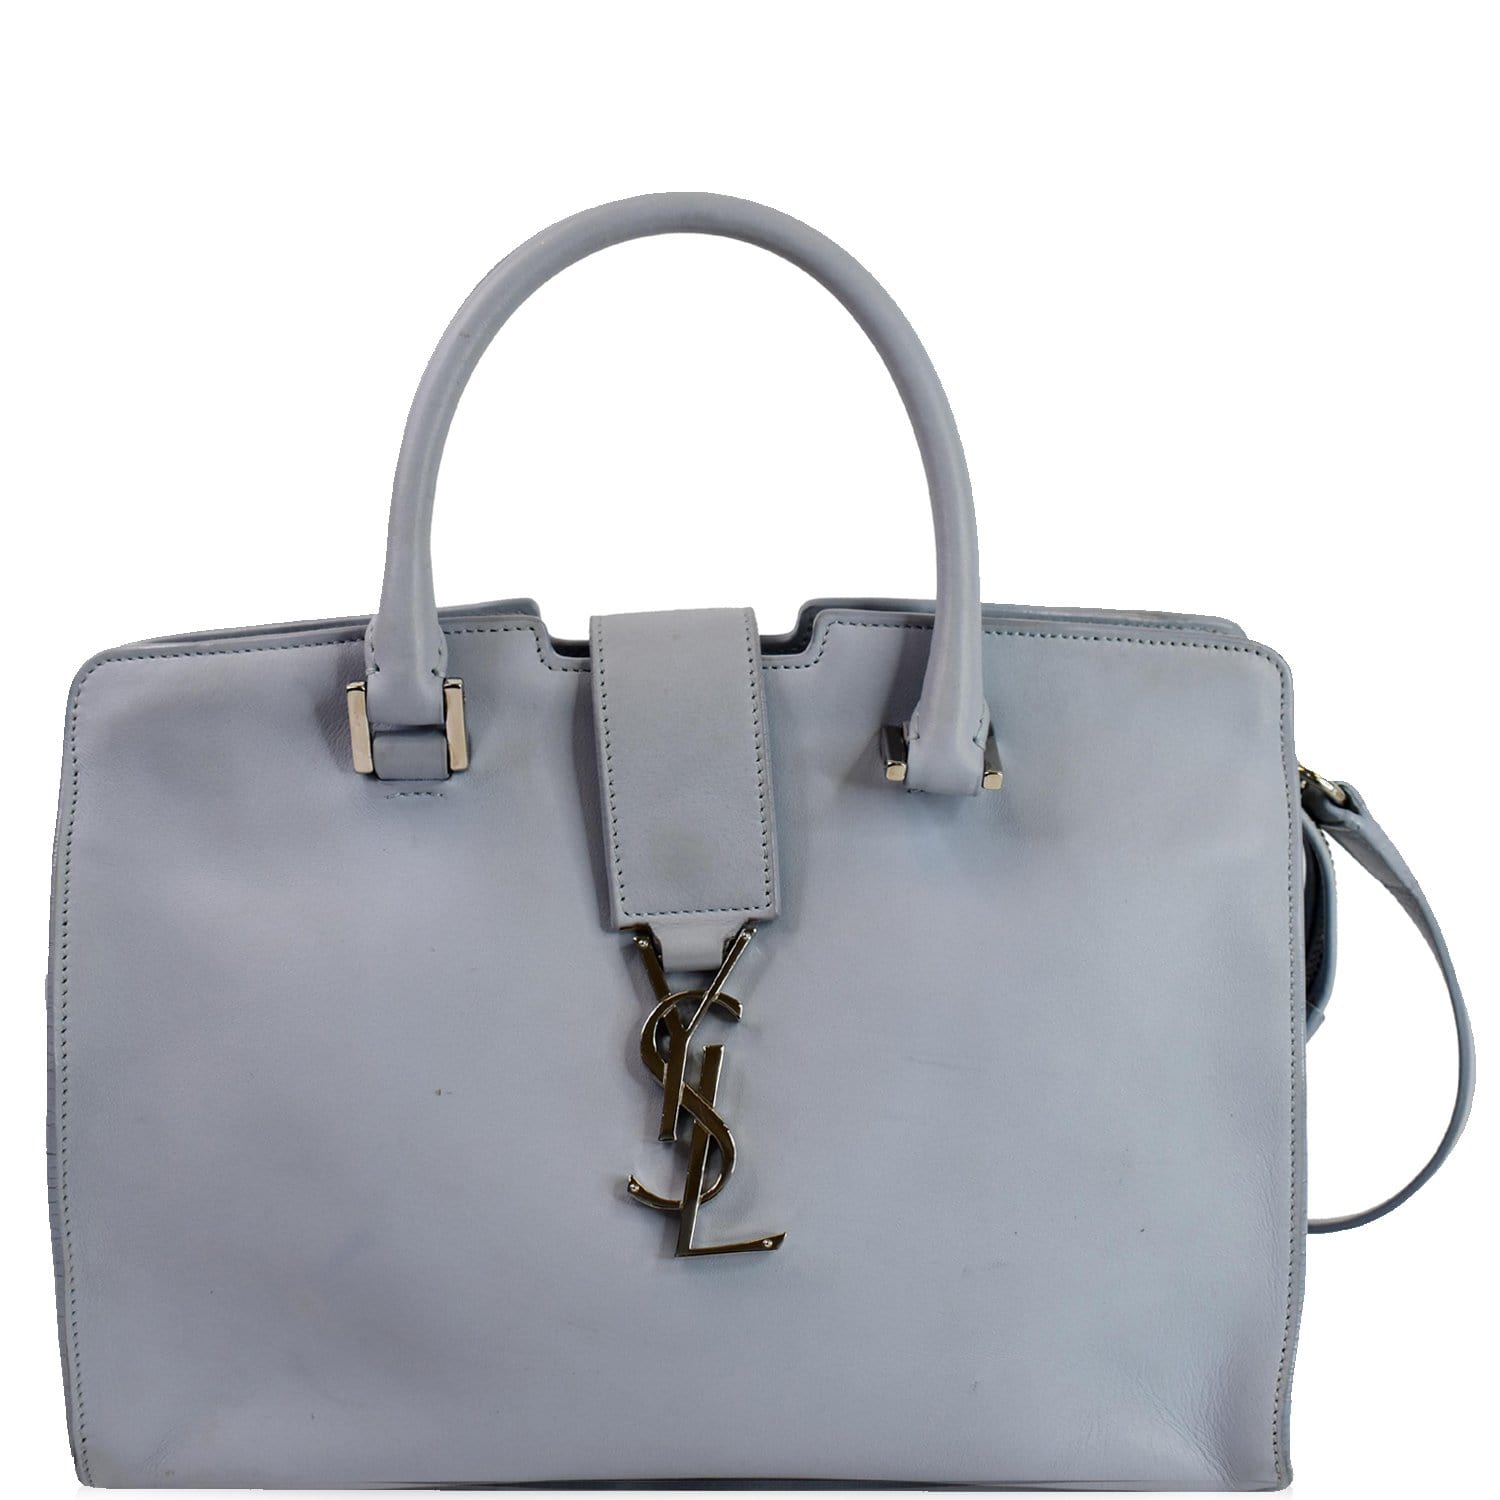 SAINT LAURENT: handbag for woman - Blue